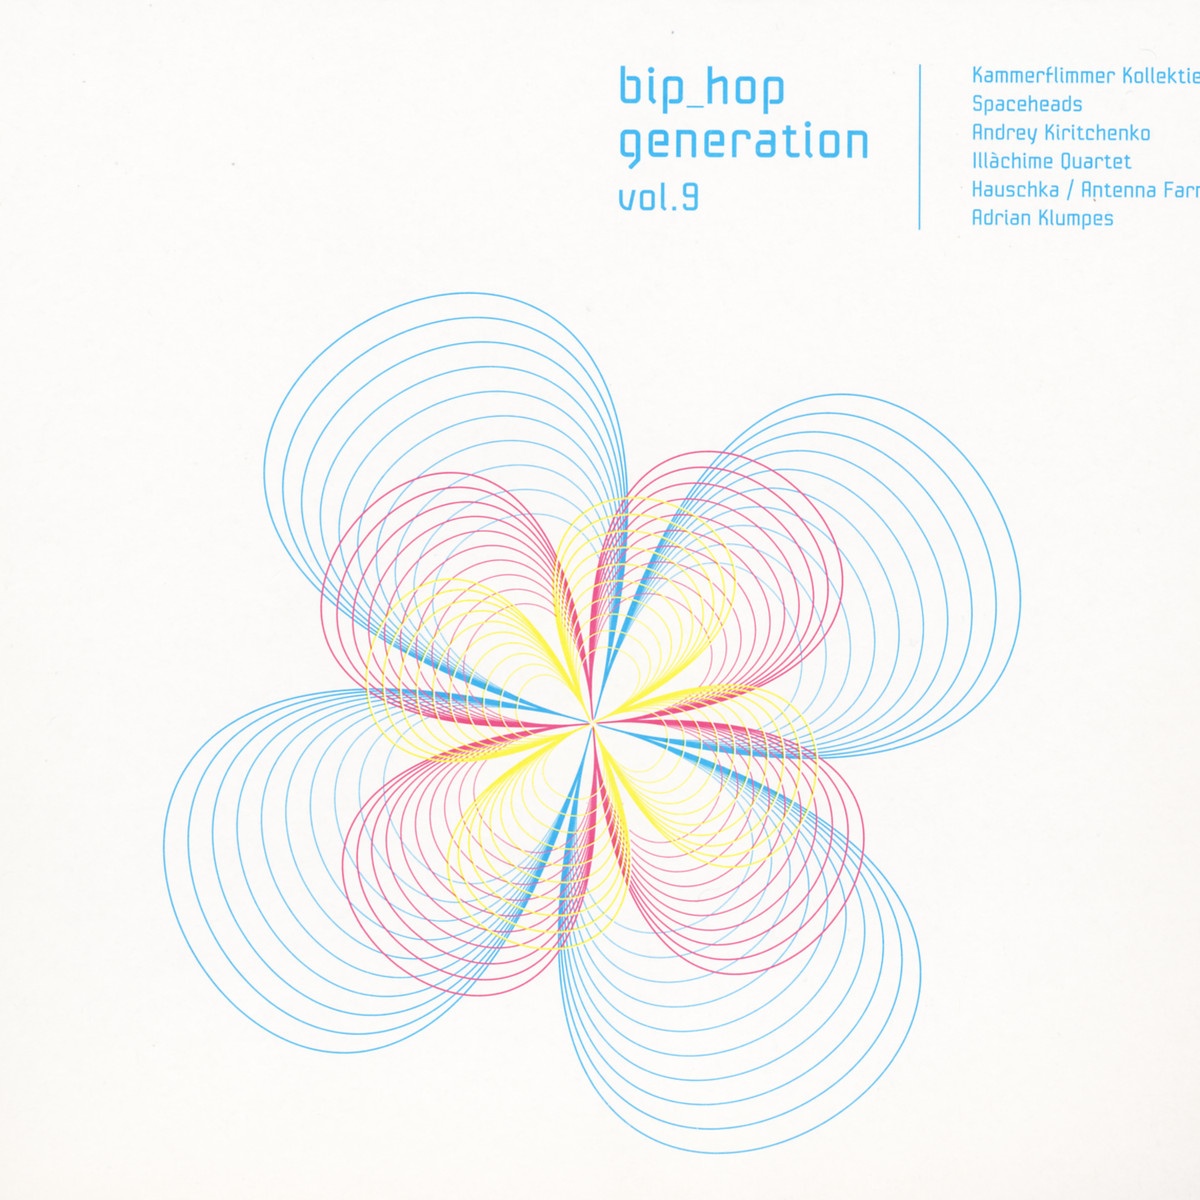 BiP_HOp Generation Vol.9